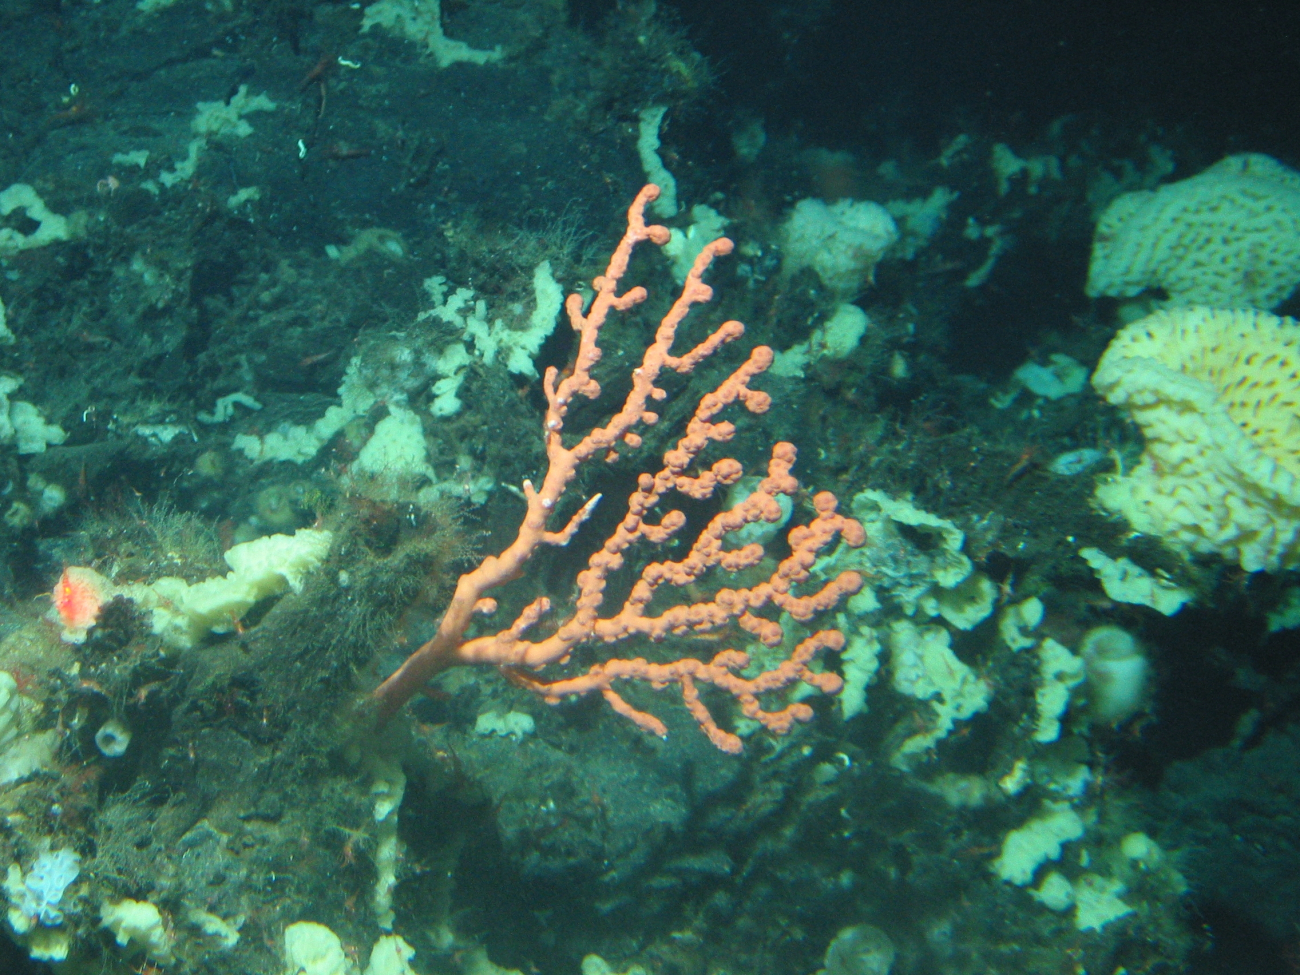 A small Paragorgia coral